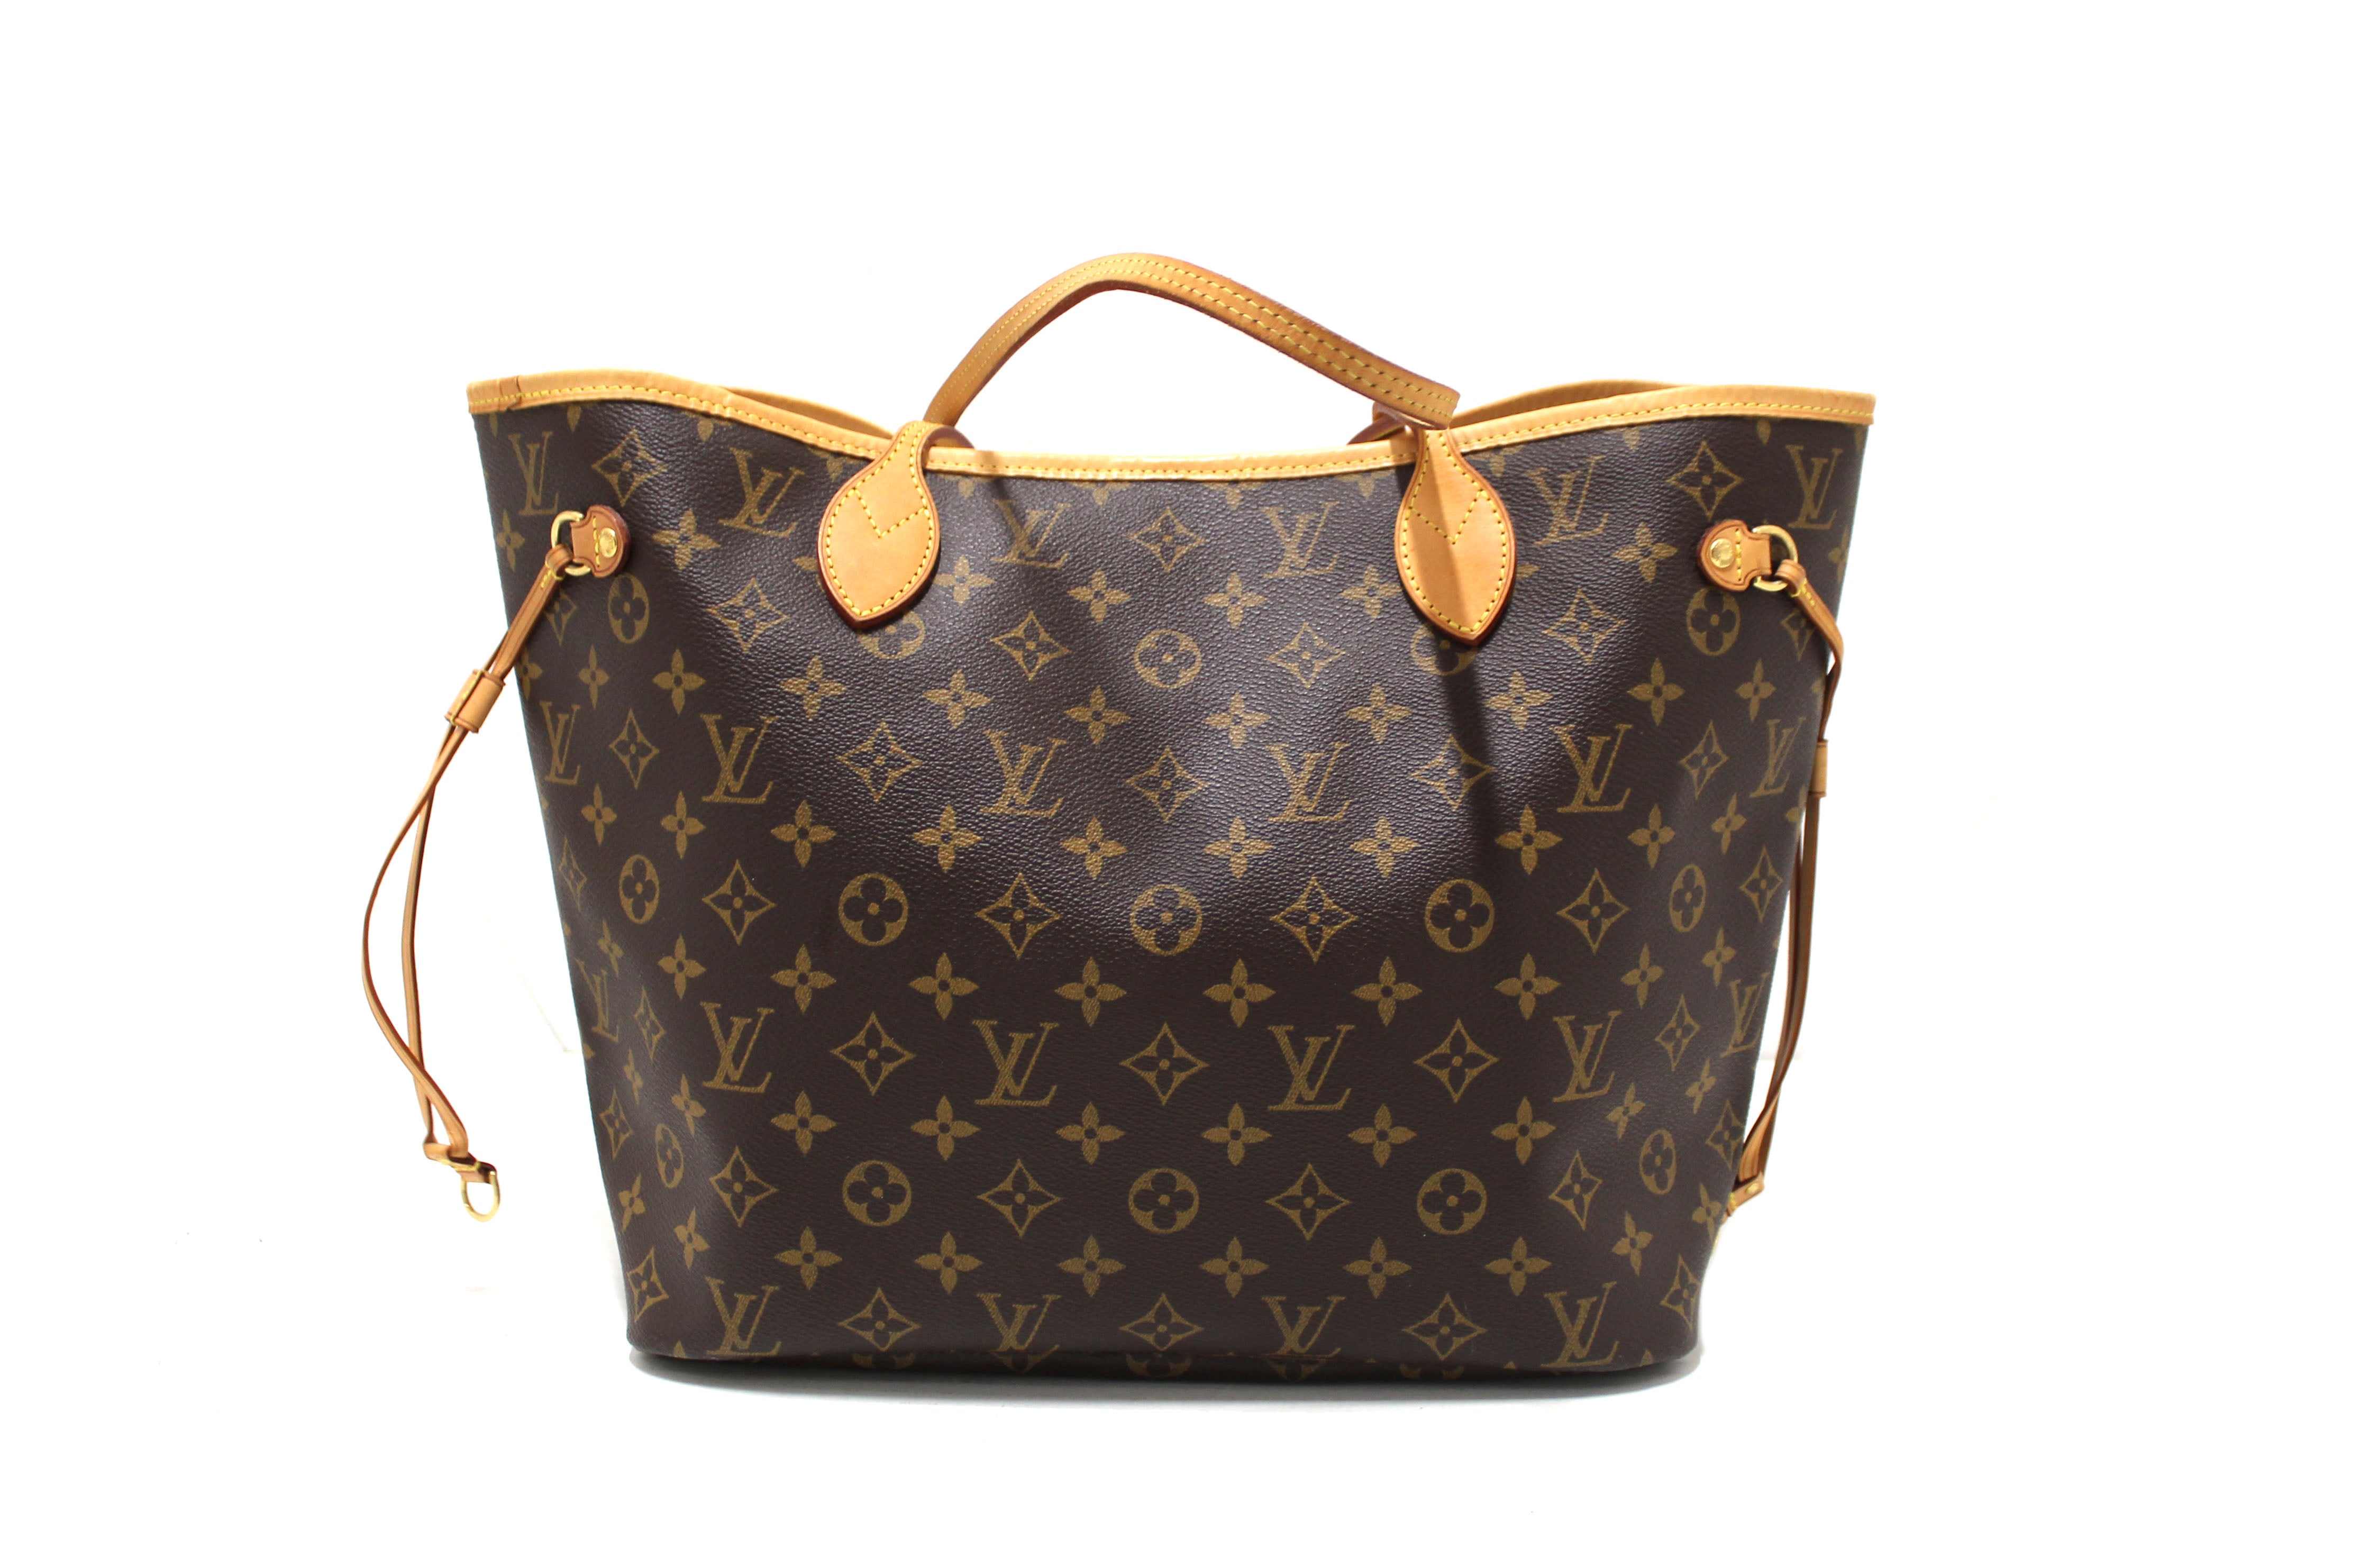 Shop Authentic Louis Vuitton Bags for Women